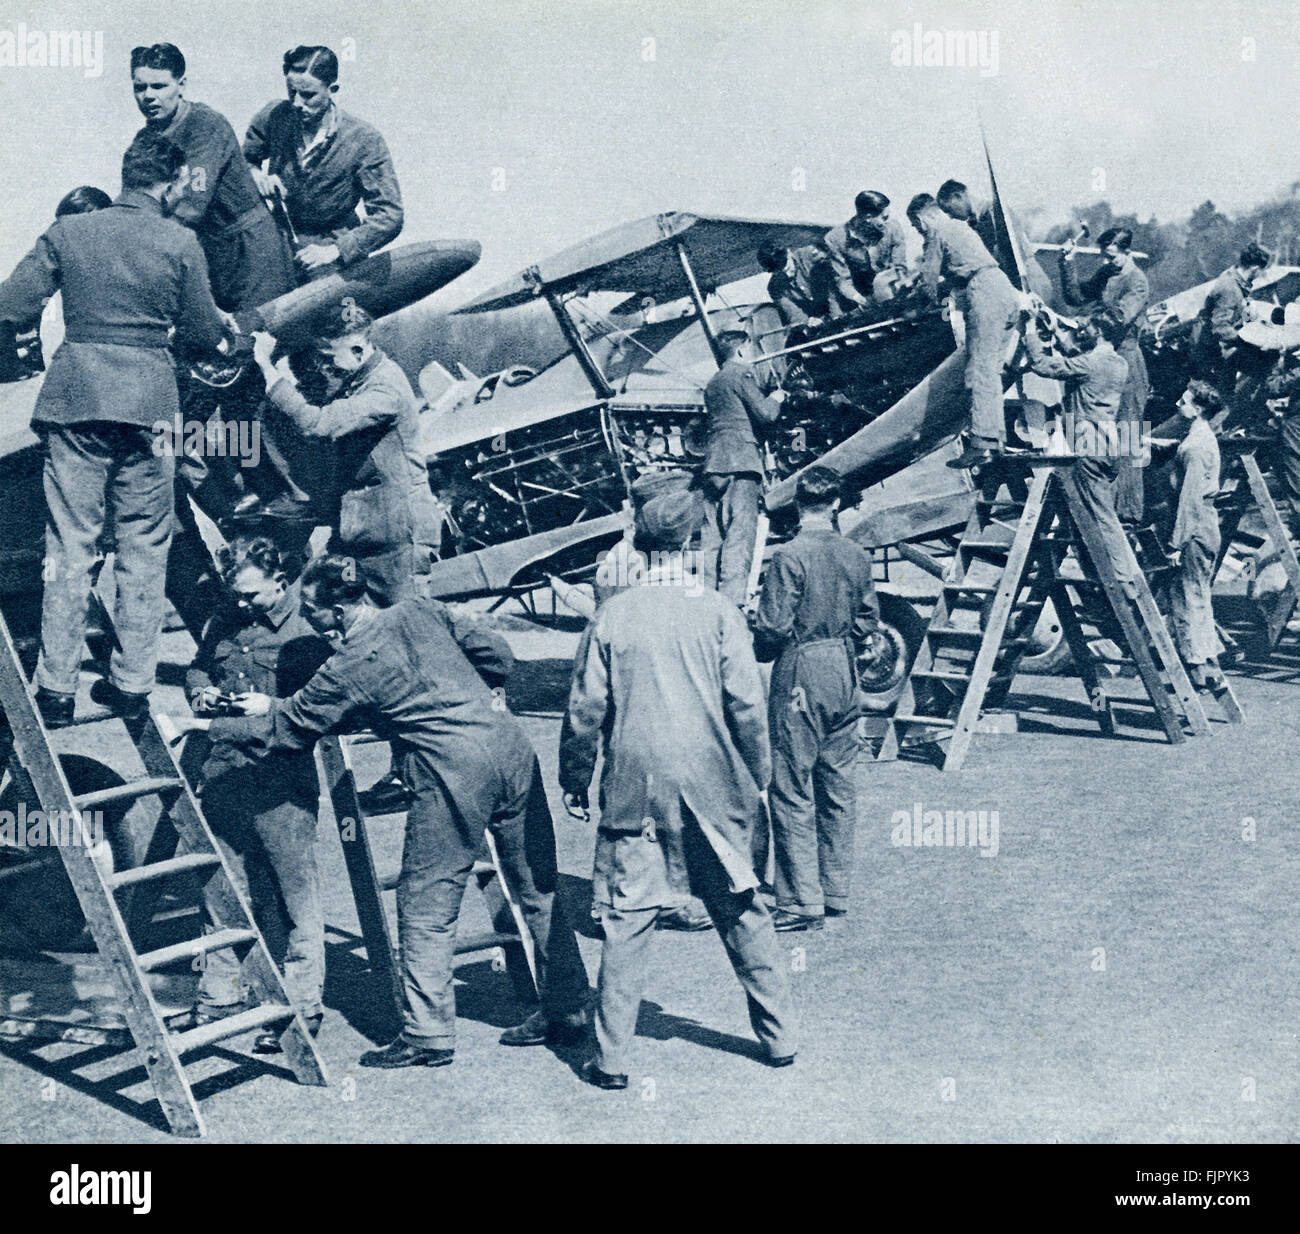 Les cadets de l'air ,c. 1940. La DEUXIÈME GUERRE MONDIALE, à un camp d'entraînement de la force aérienne. Avion de chasse moteurs sont dépouillés pour les travaux pratiques par les cadets. Banque D'Images